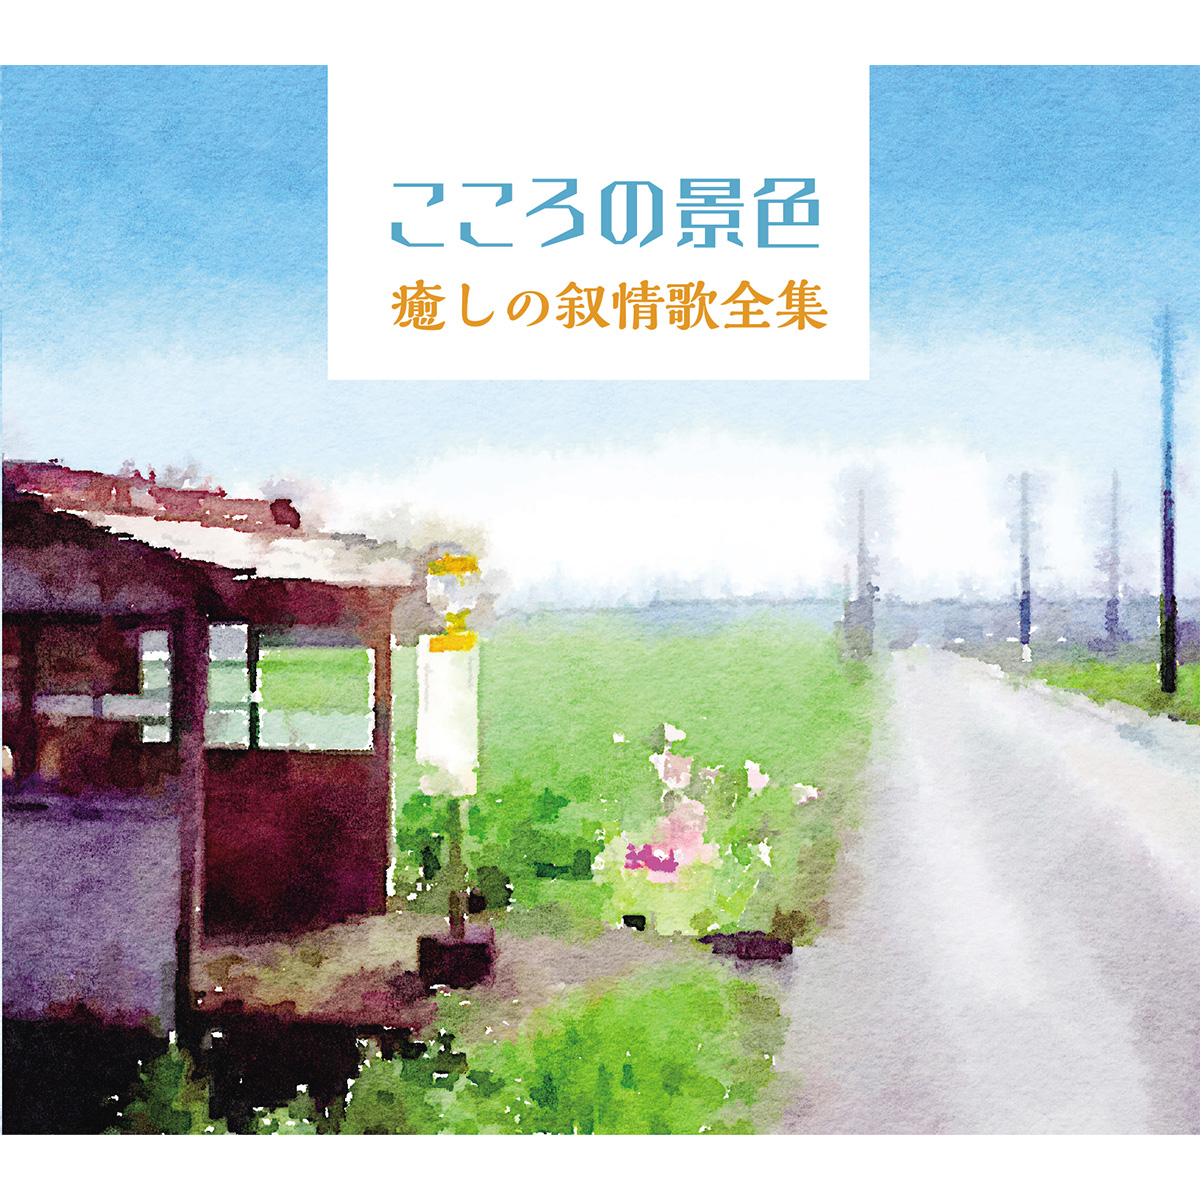 ■【CD】こころの景色~癒しの叙情歌全集 6枚組